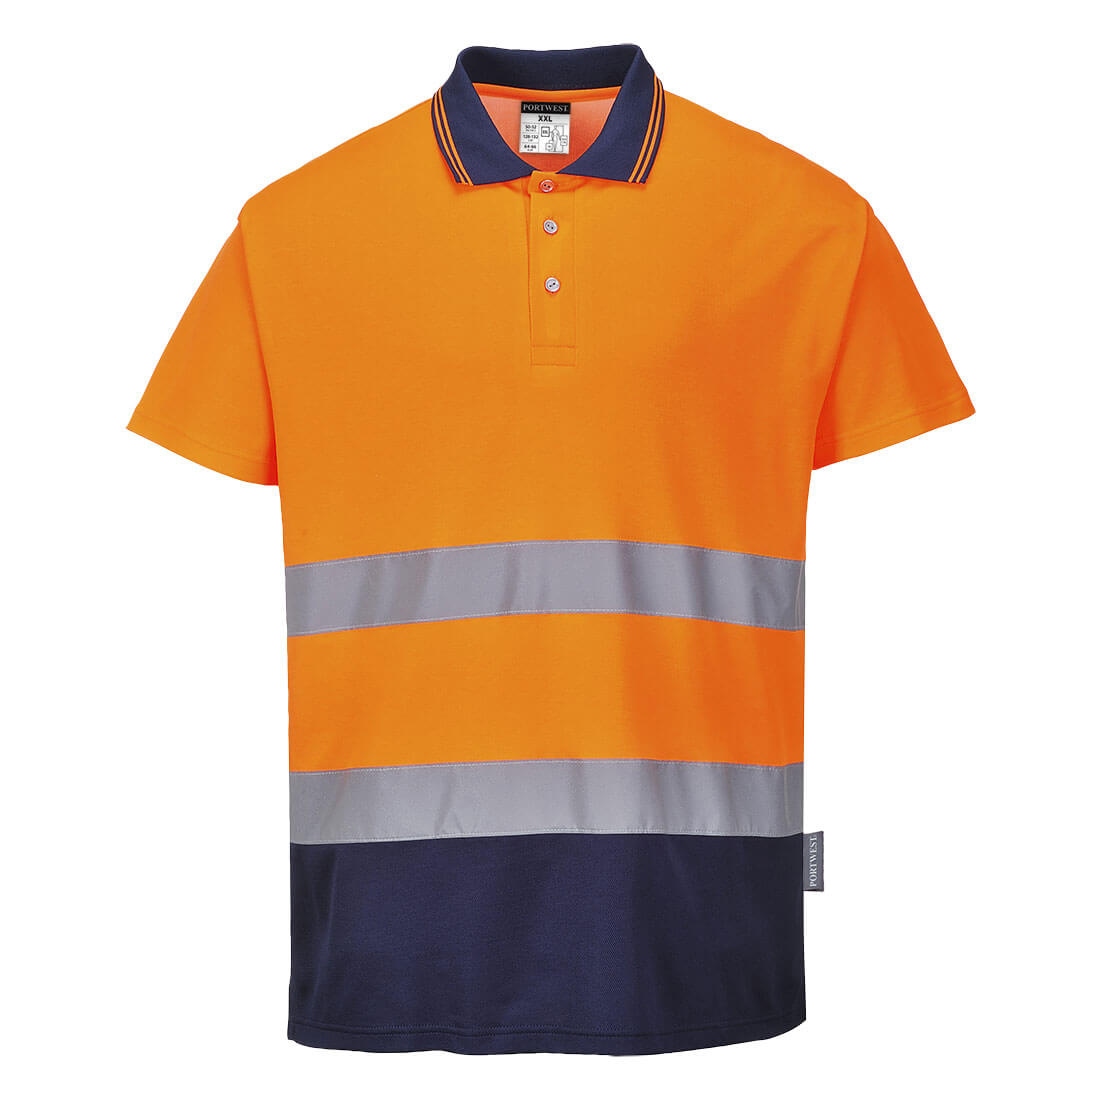 Portwest Hi-Vis Cotton Comfort Contrast Polo Shirt S/S